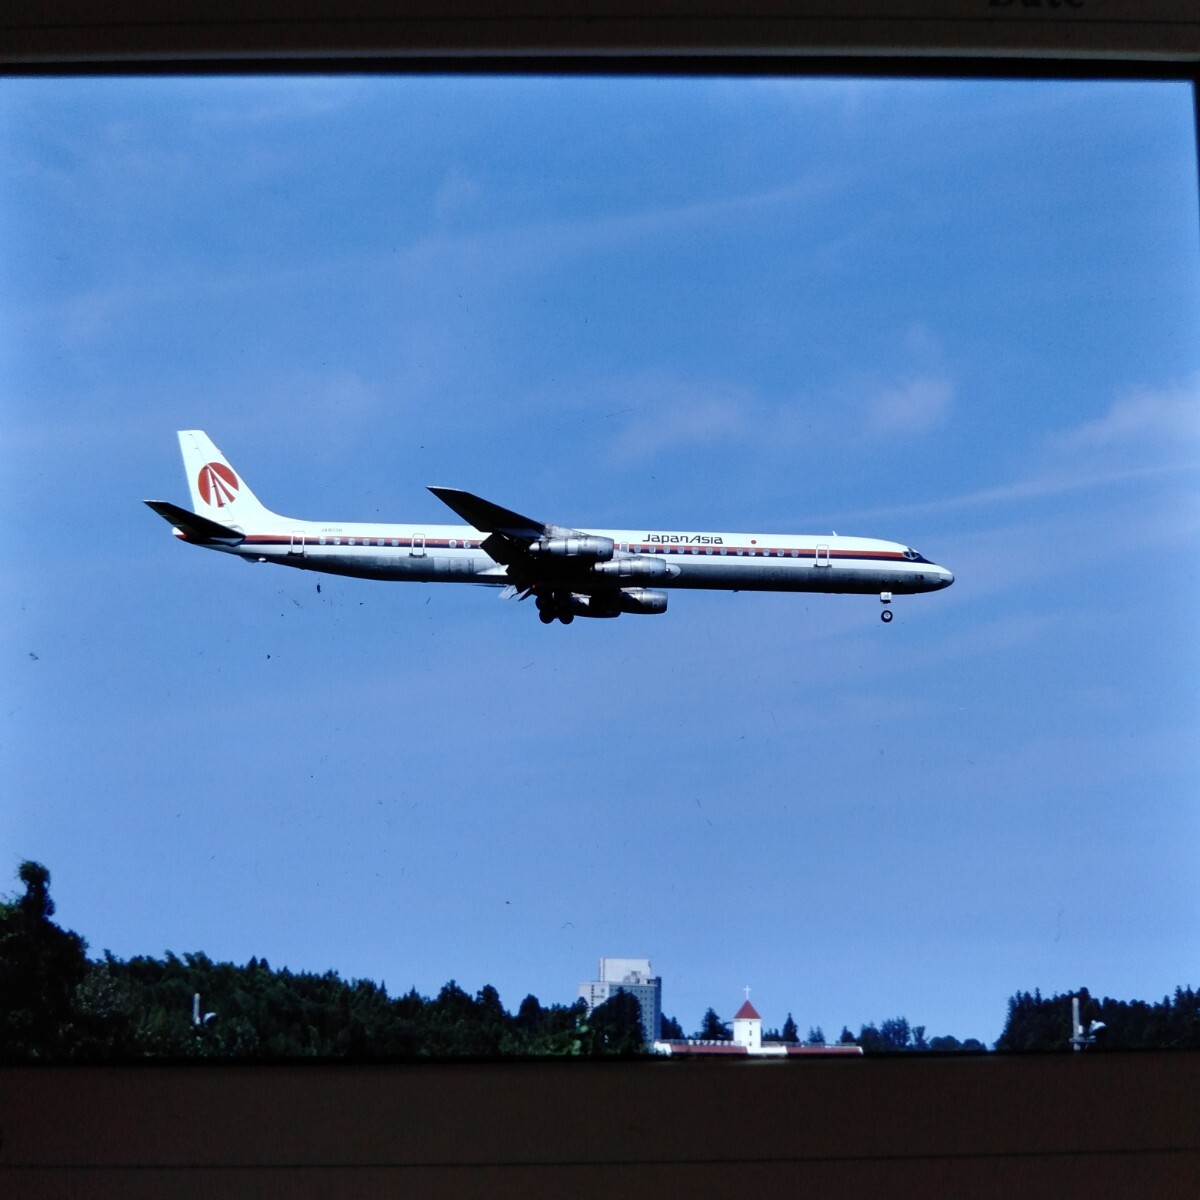 ne041 самолет пассажирский лайнер JALbo- крыло 747nega камера любитель . магазин товар поставка со склада коллекция 6 листов совместно 